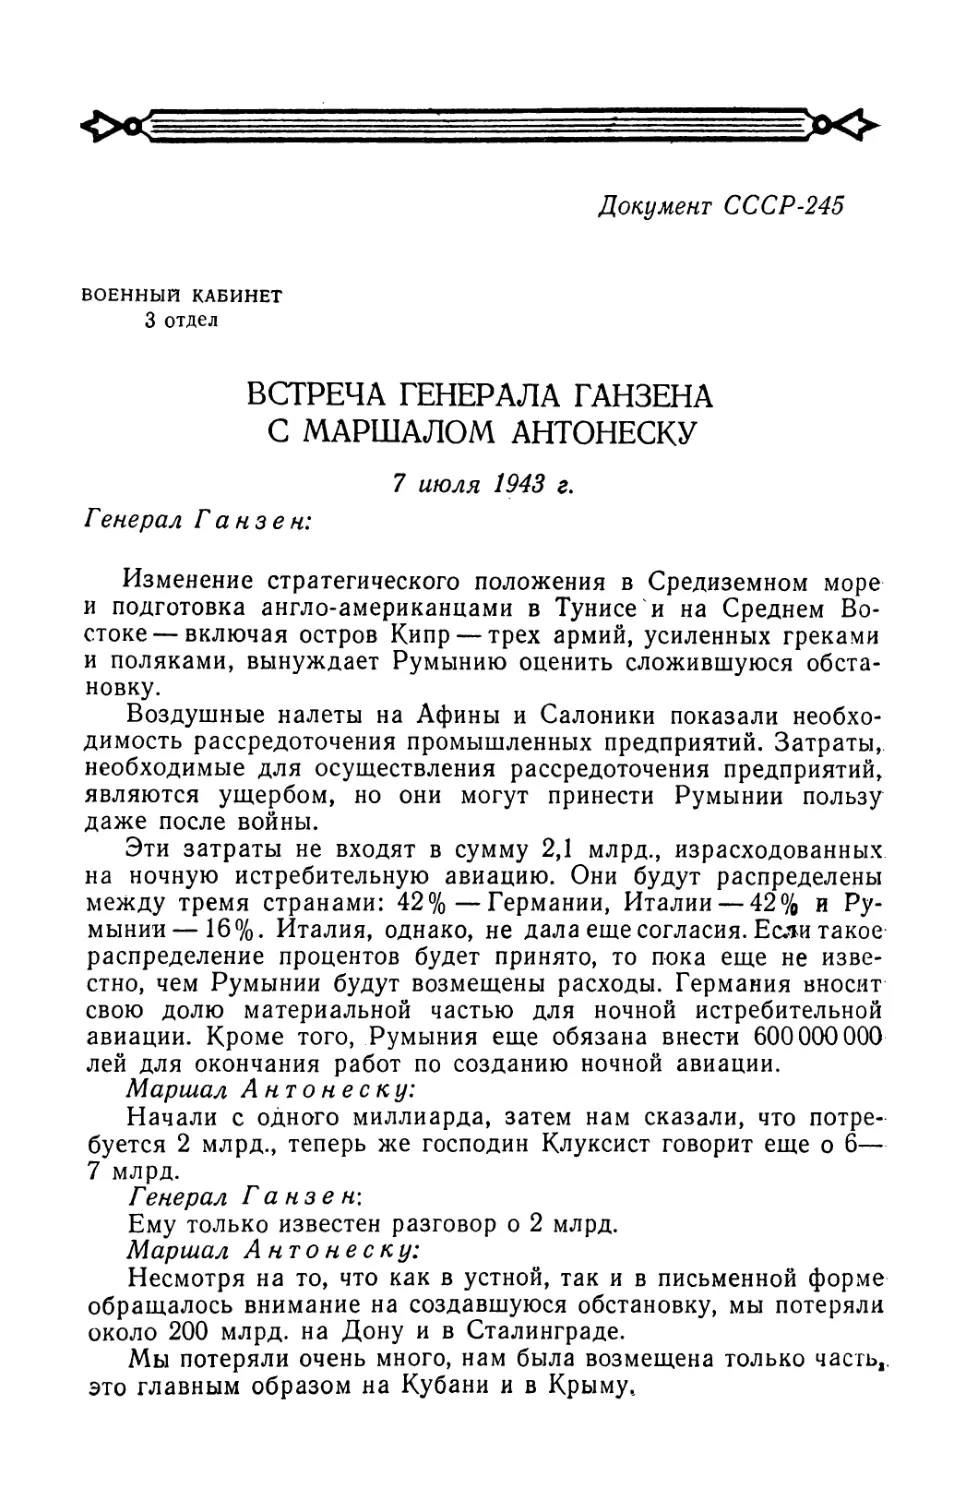 Запись встречи генерала Ганзена с Антонеску от 7 июля 1943 г.